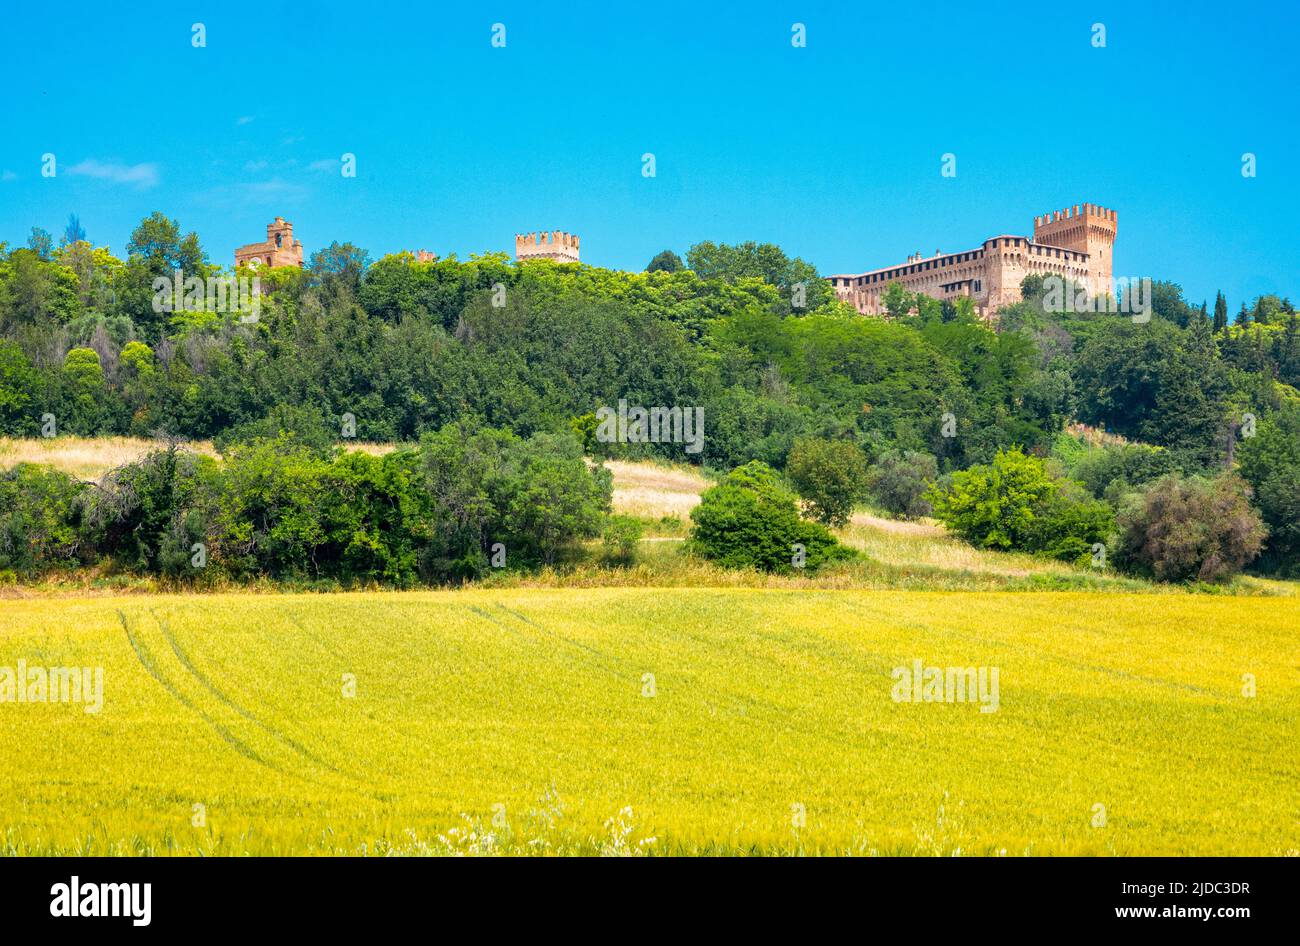 Gradara, Italia, el pueblo con la fortaleza vista desde el valle con los campos cultivados Foto de stock